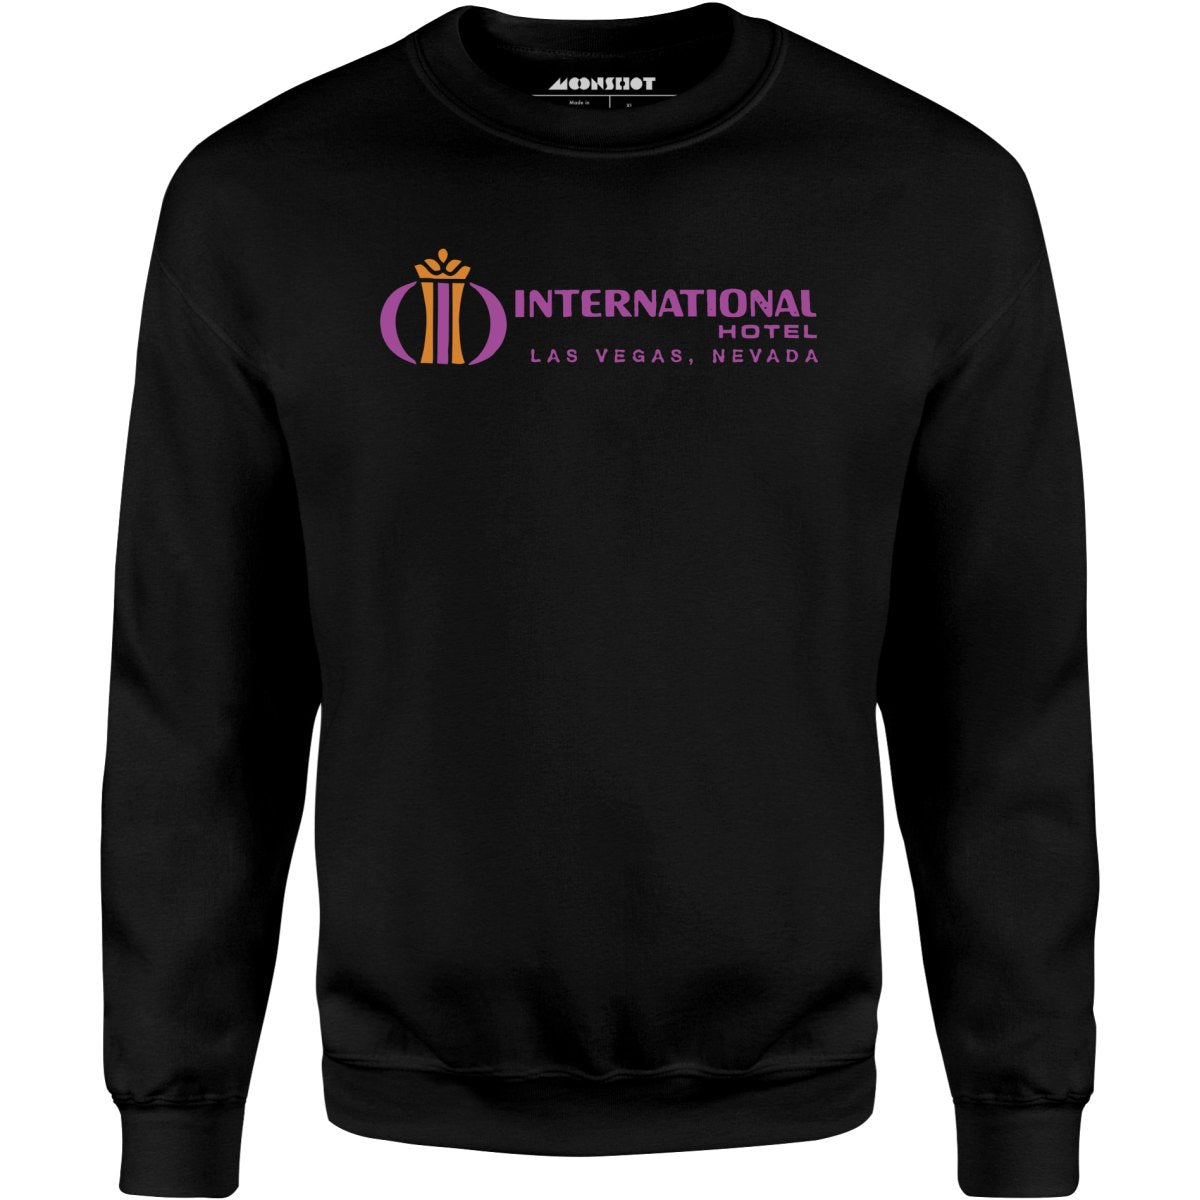 International Hotel - Vintage Las Vegas - Unisex Sweatshirt